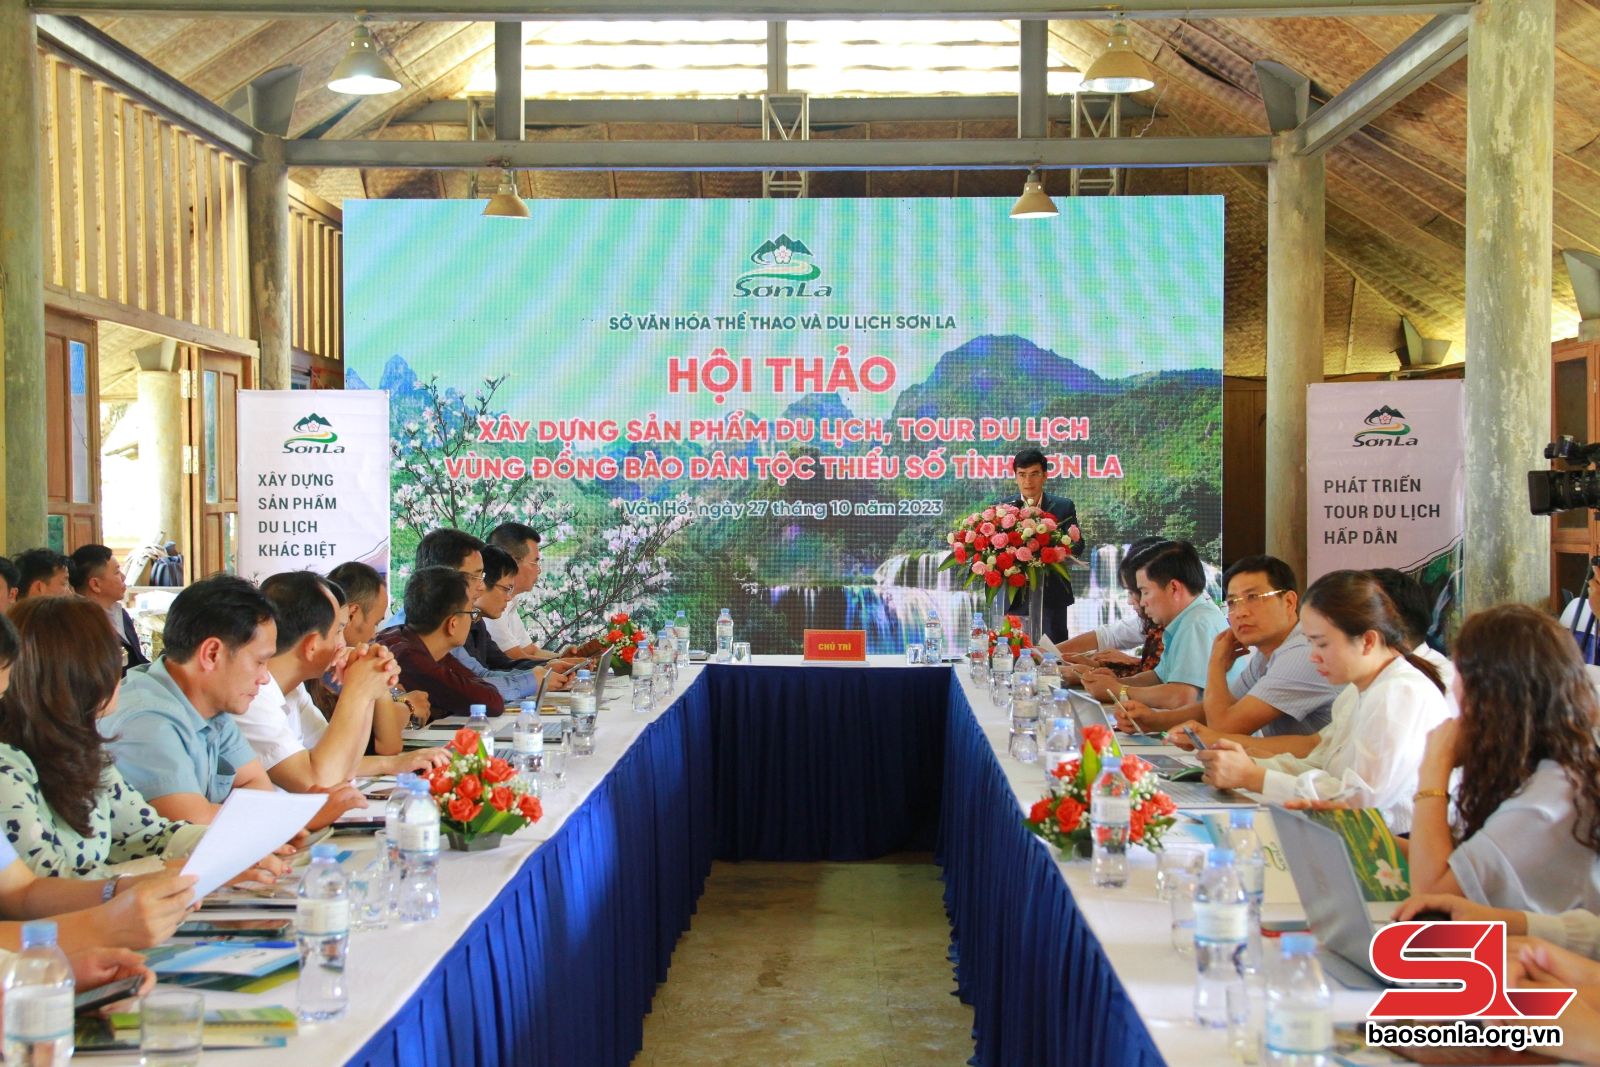 Xây dựng sản phẩm du lịch, tour du lịch vùng đồng bào dân tộc thiểu số tỉnh Sơn La - Ảnh 1.